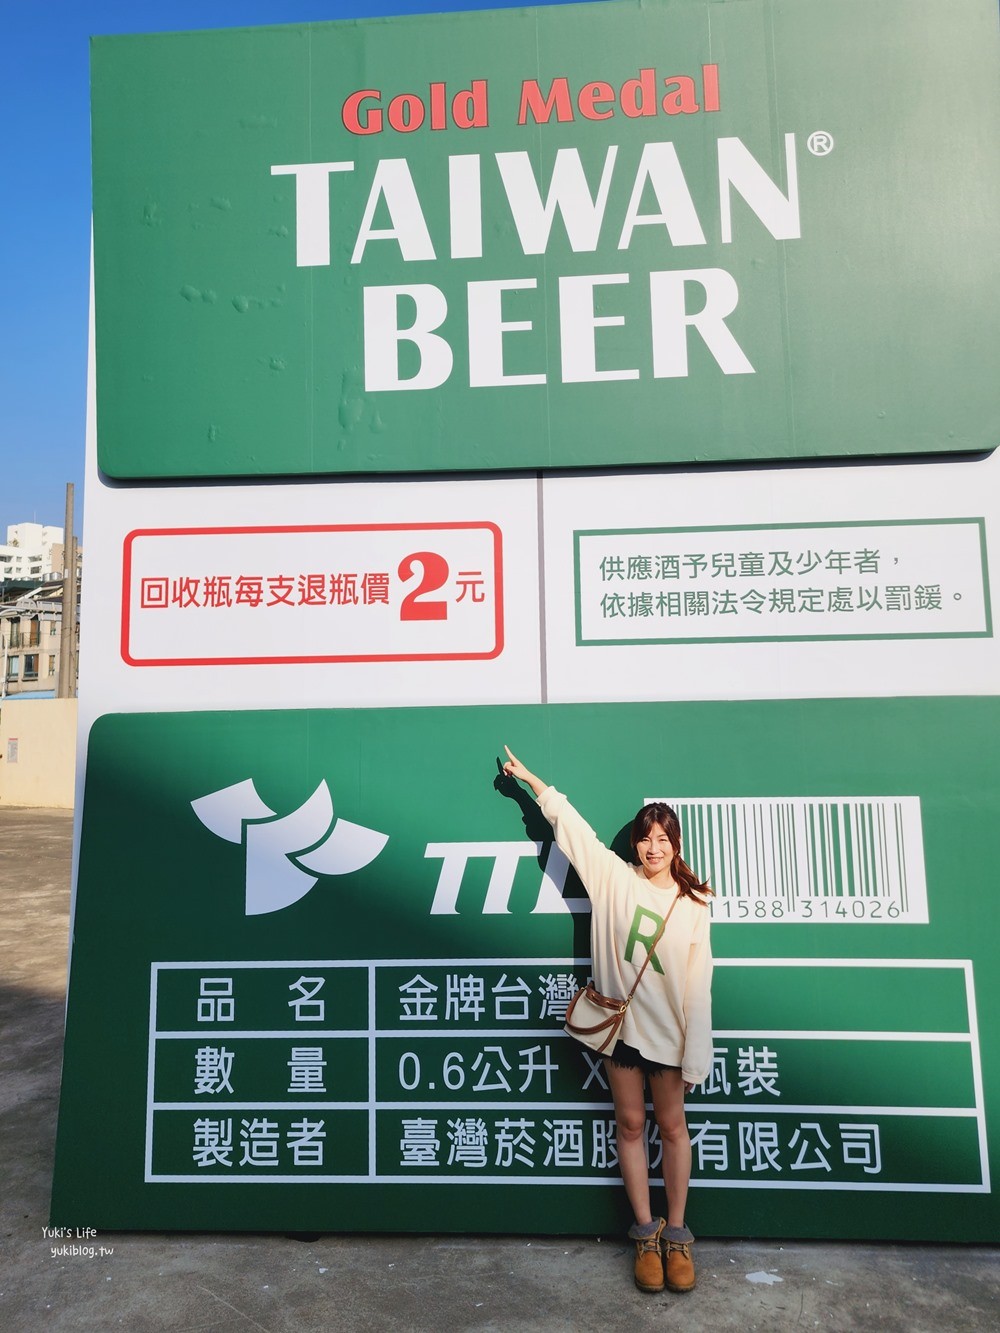 台中烏日景點|烏日啤酒觀光工廠|巨大箱金牌全新完工亮相 - yukiblog.tw